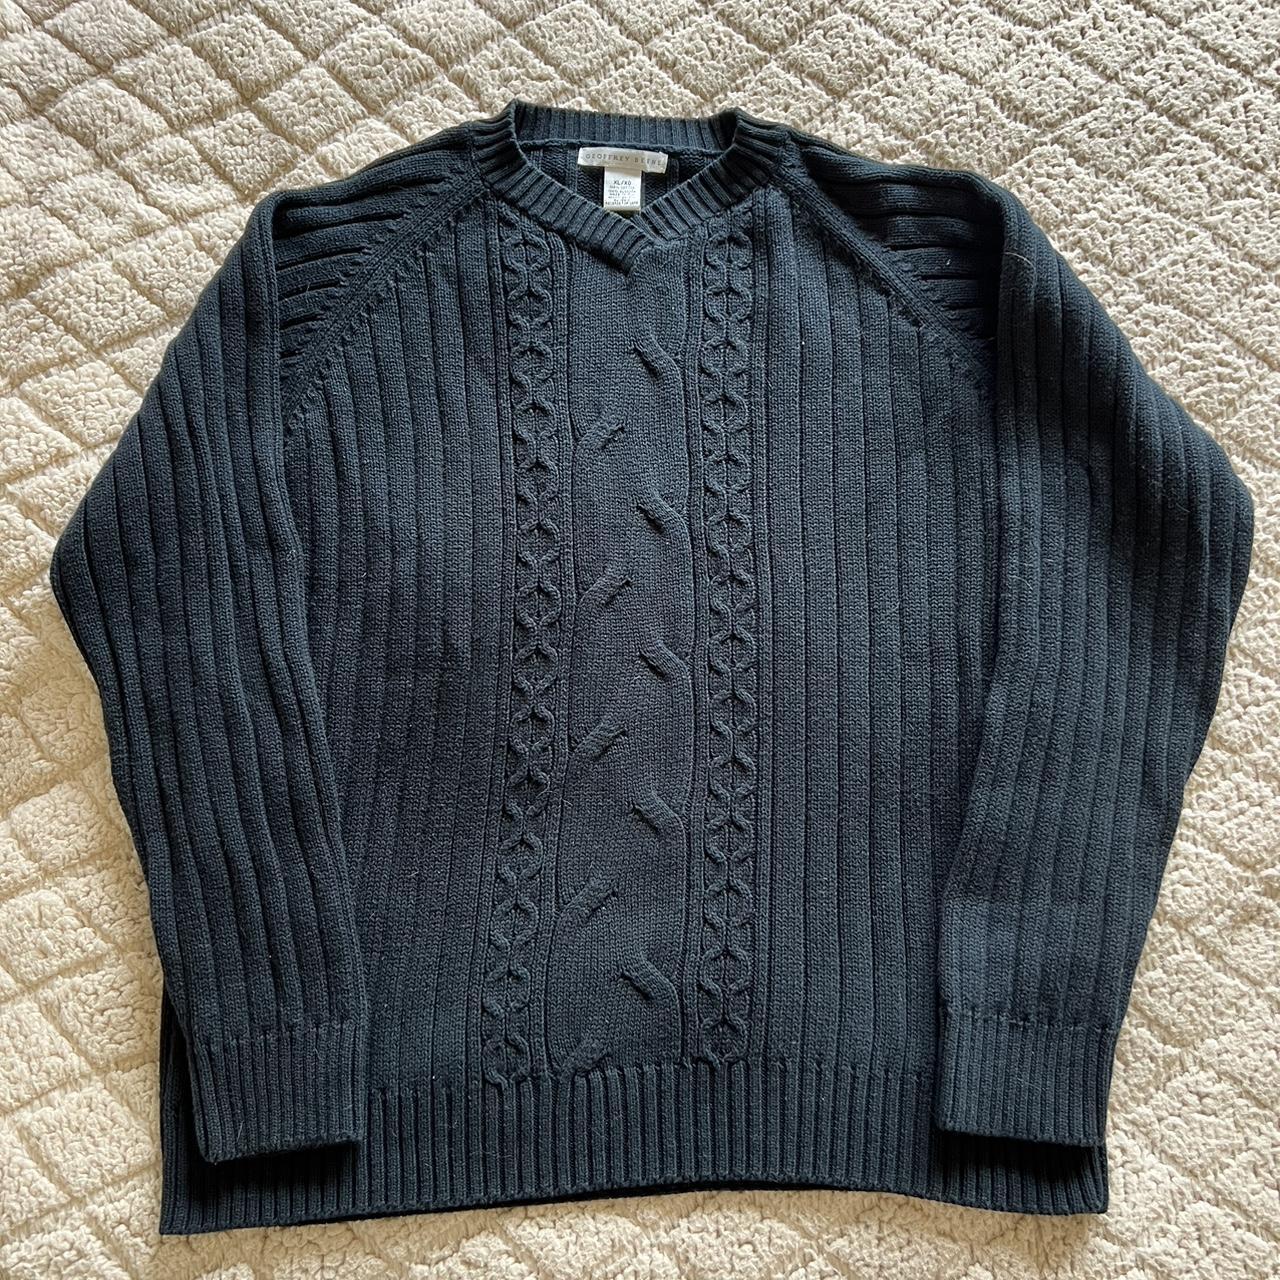 Geoffrey Beene Men's Cardigan Sweater size XL... - Depop